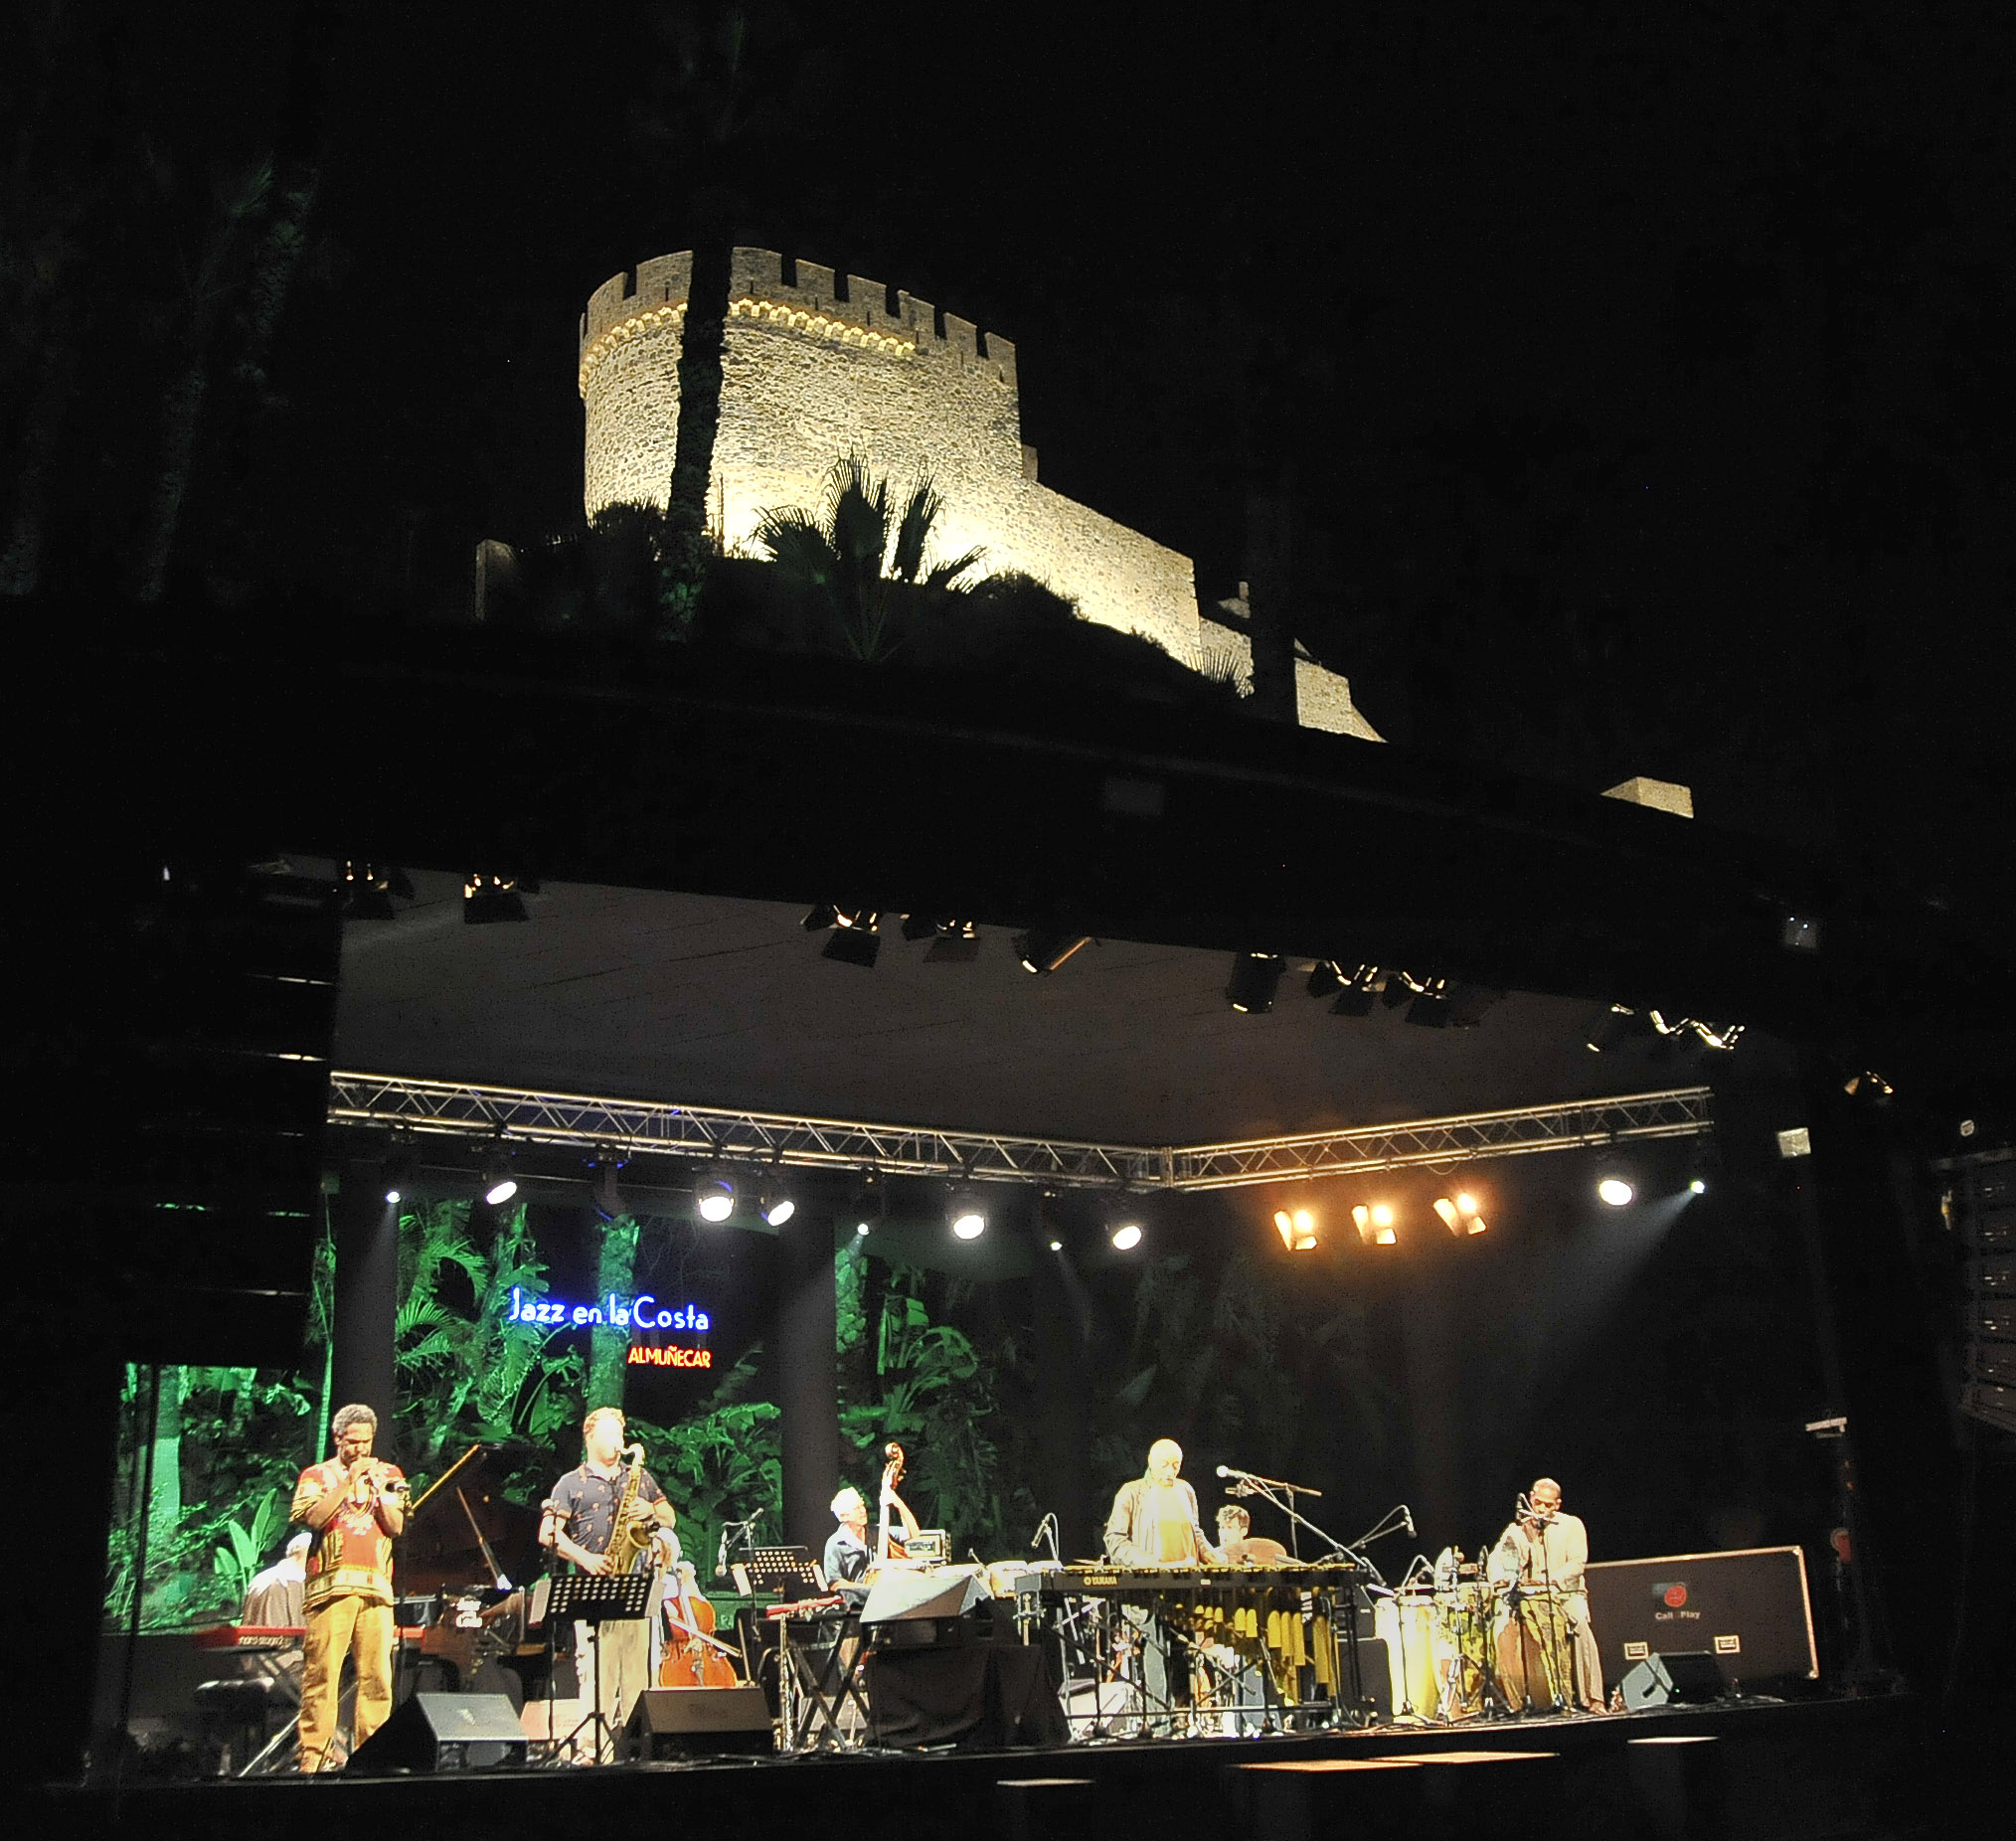 El 'sold out' de Mulatu Astatke da paso al concierto de D aym Arocena Band en el Jazz en la Costa de Almucar